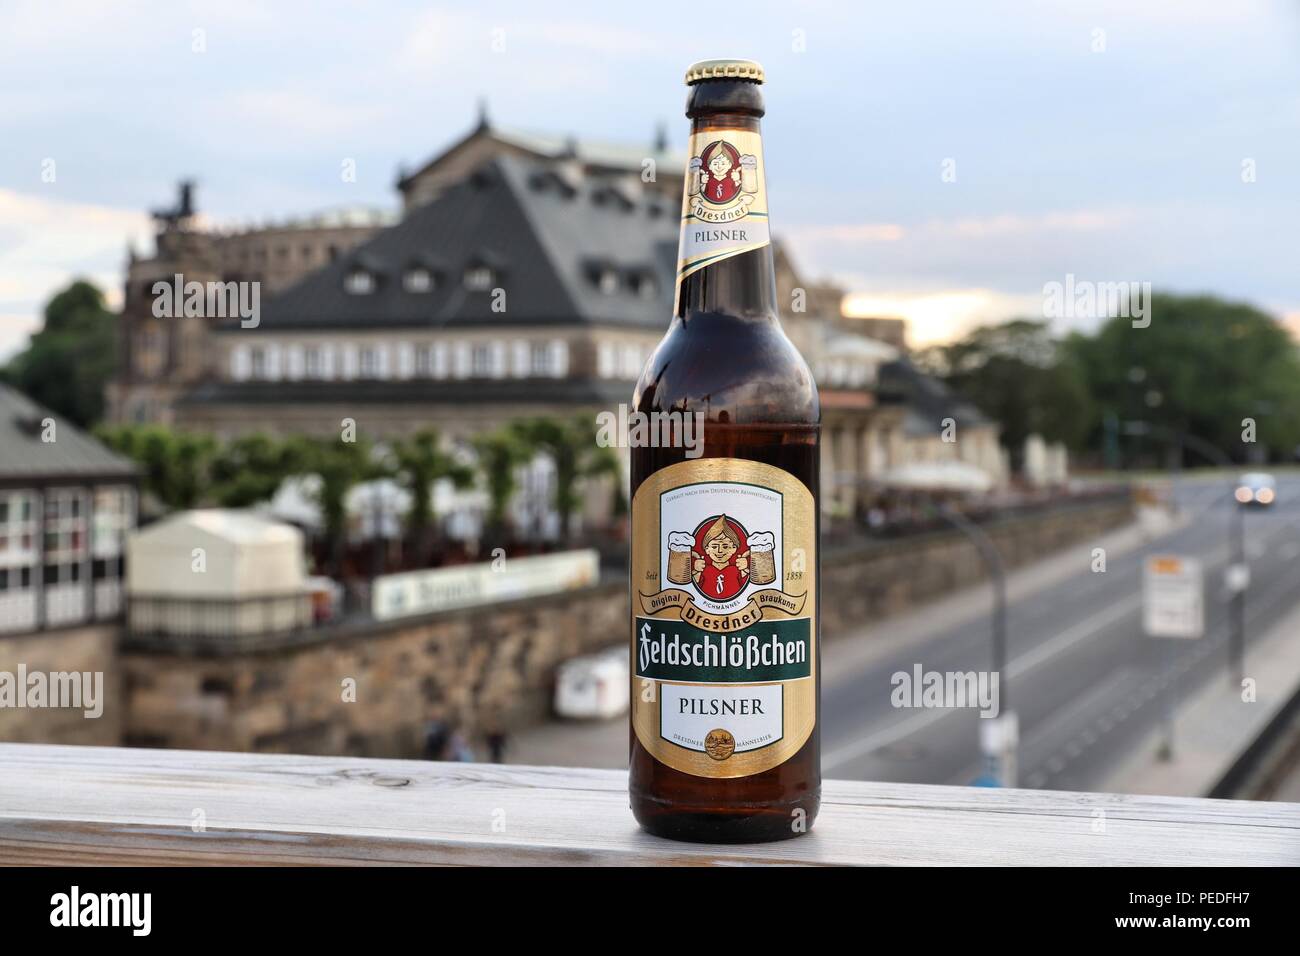 DRESDEN, GERMANY - MAY 10, 2018: Feldschlosschen pilsner beer bottle in Dresden. 1,300 breweries in Germany produce some 5,000 brands of beer. Stock Photo